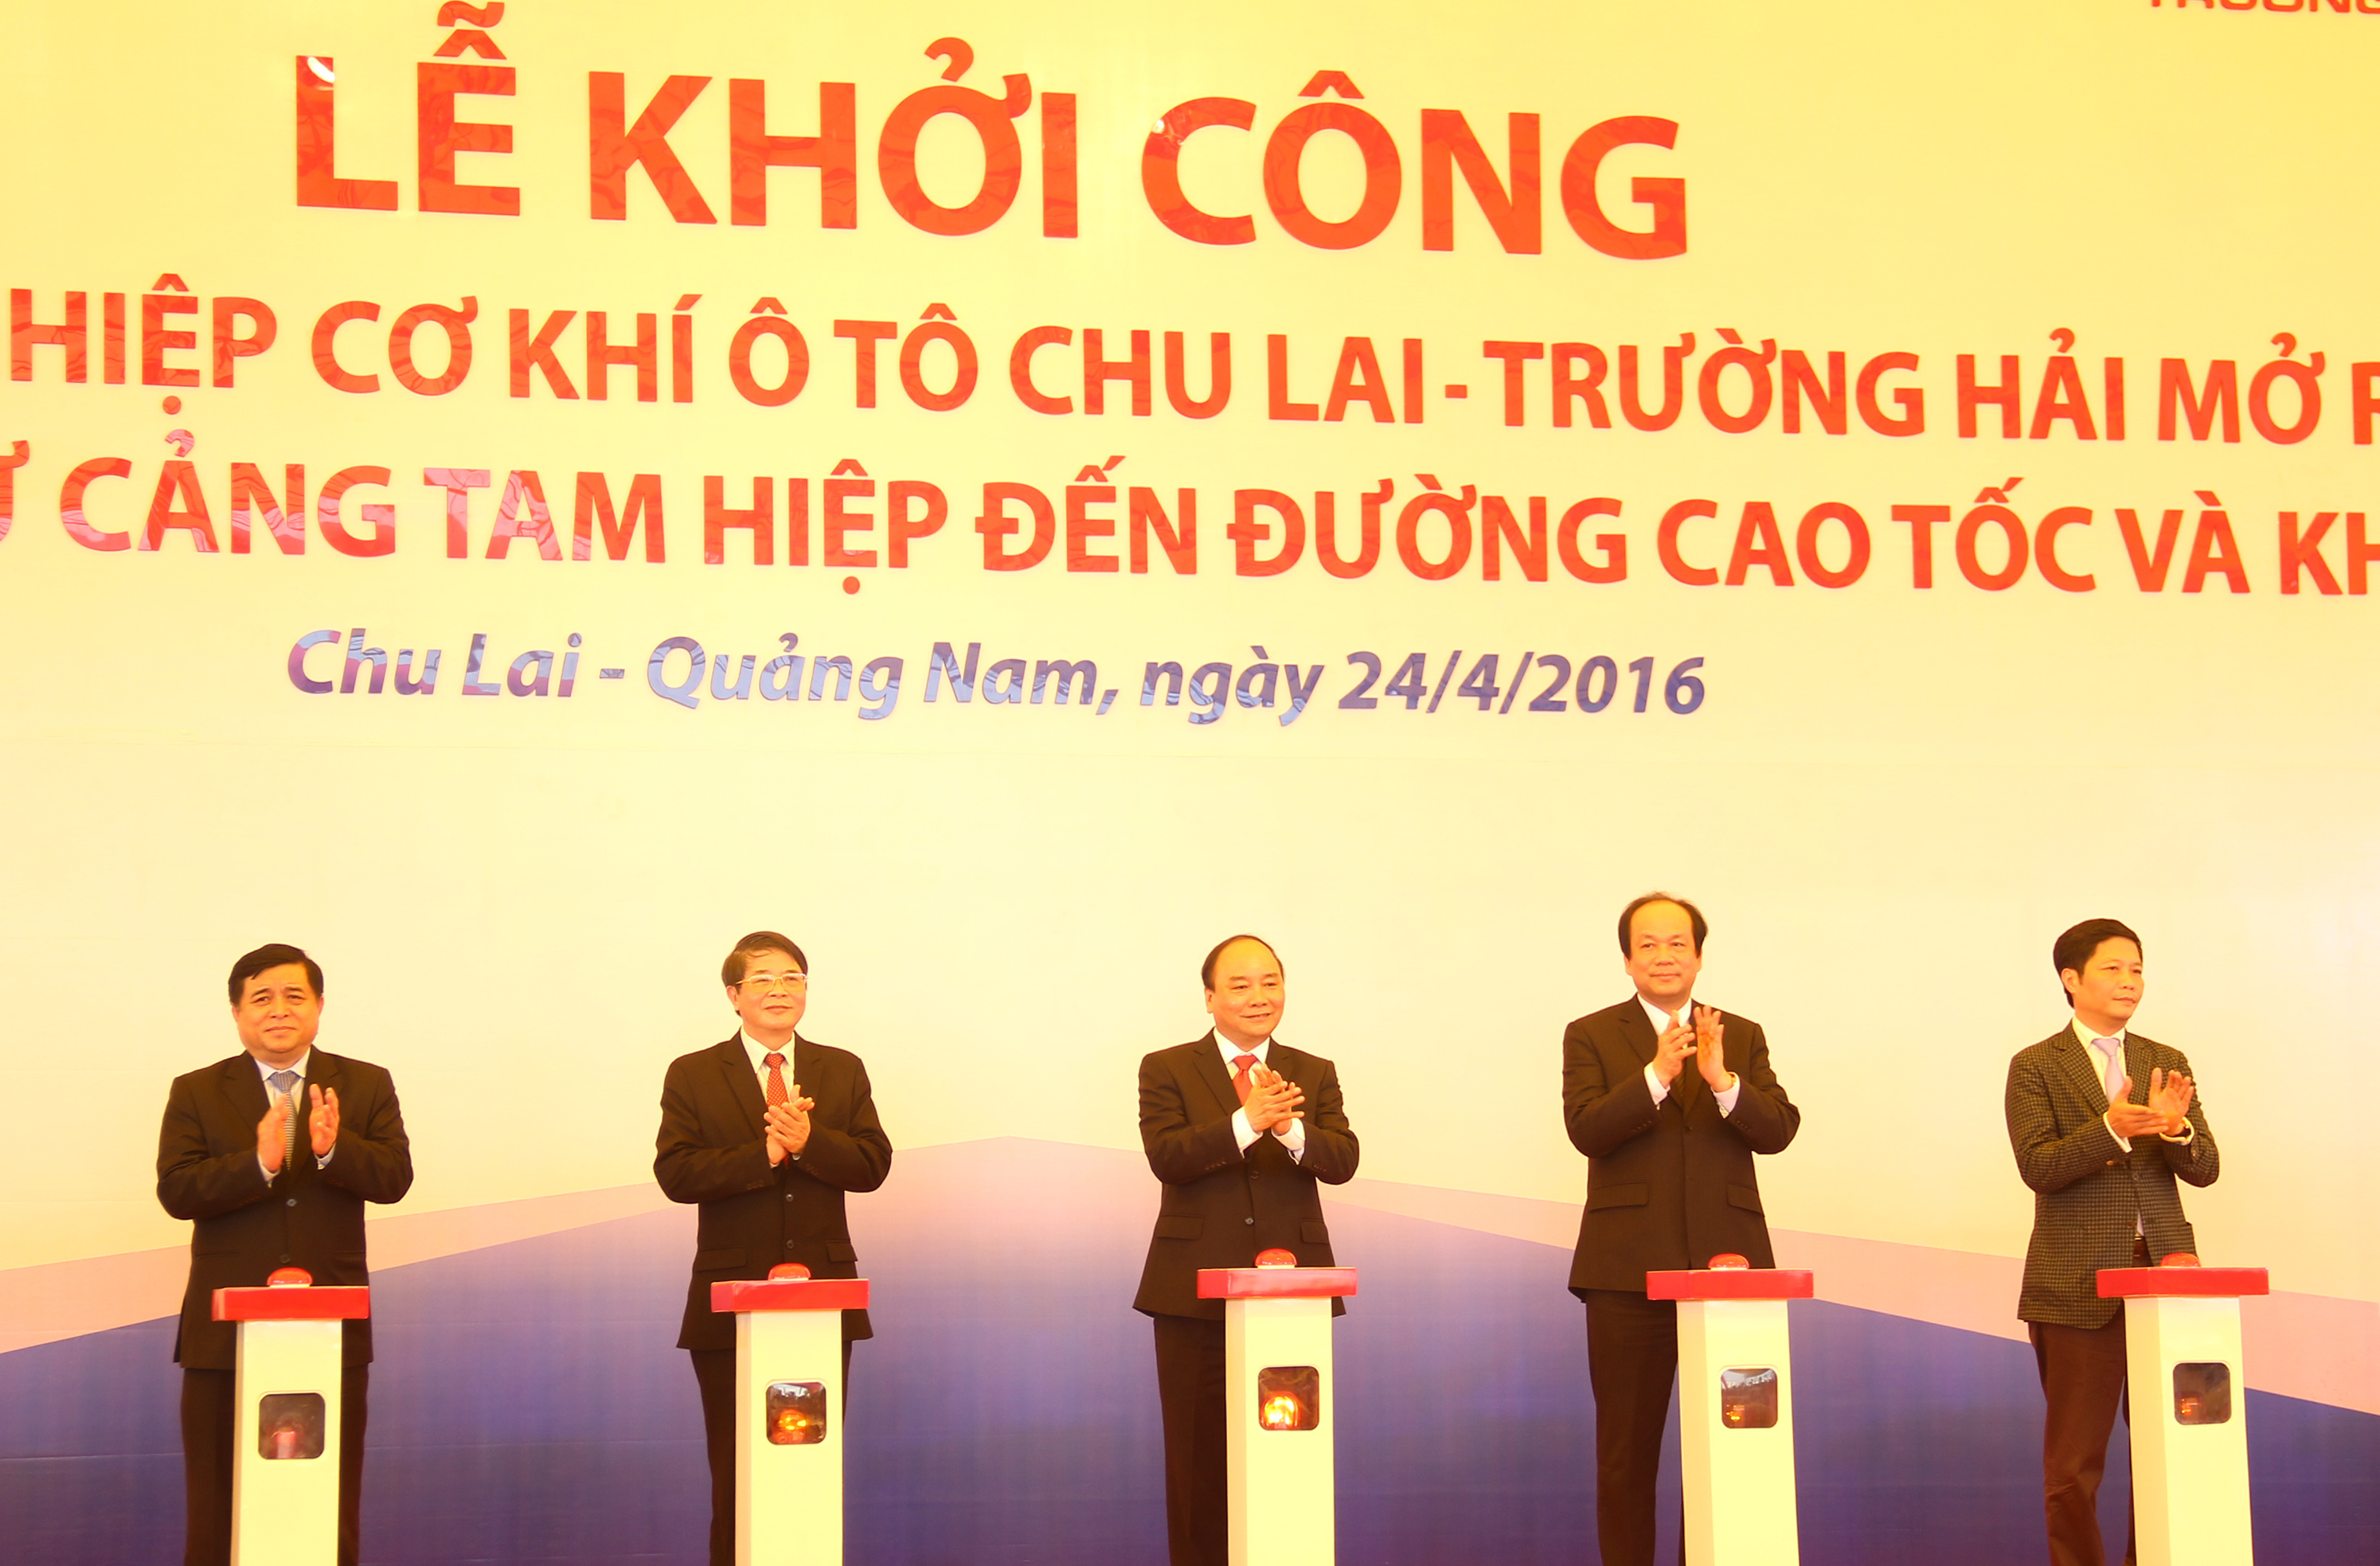 Thủ tướng Nguyễn Xuân Phúc (giữa) tại lễ khởi công mở rộng khu công nghiệp cơ khí ô tô Chu Lai - Trường Hải trưa 24.4